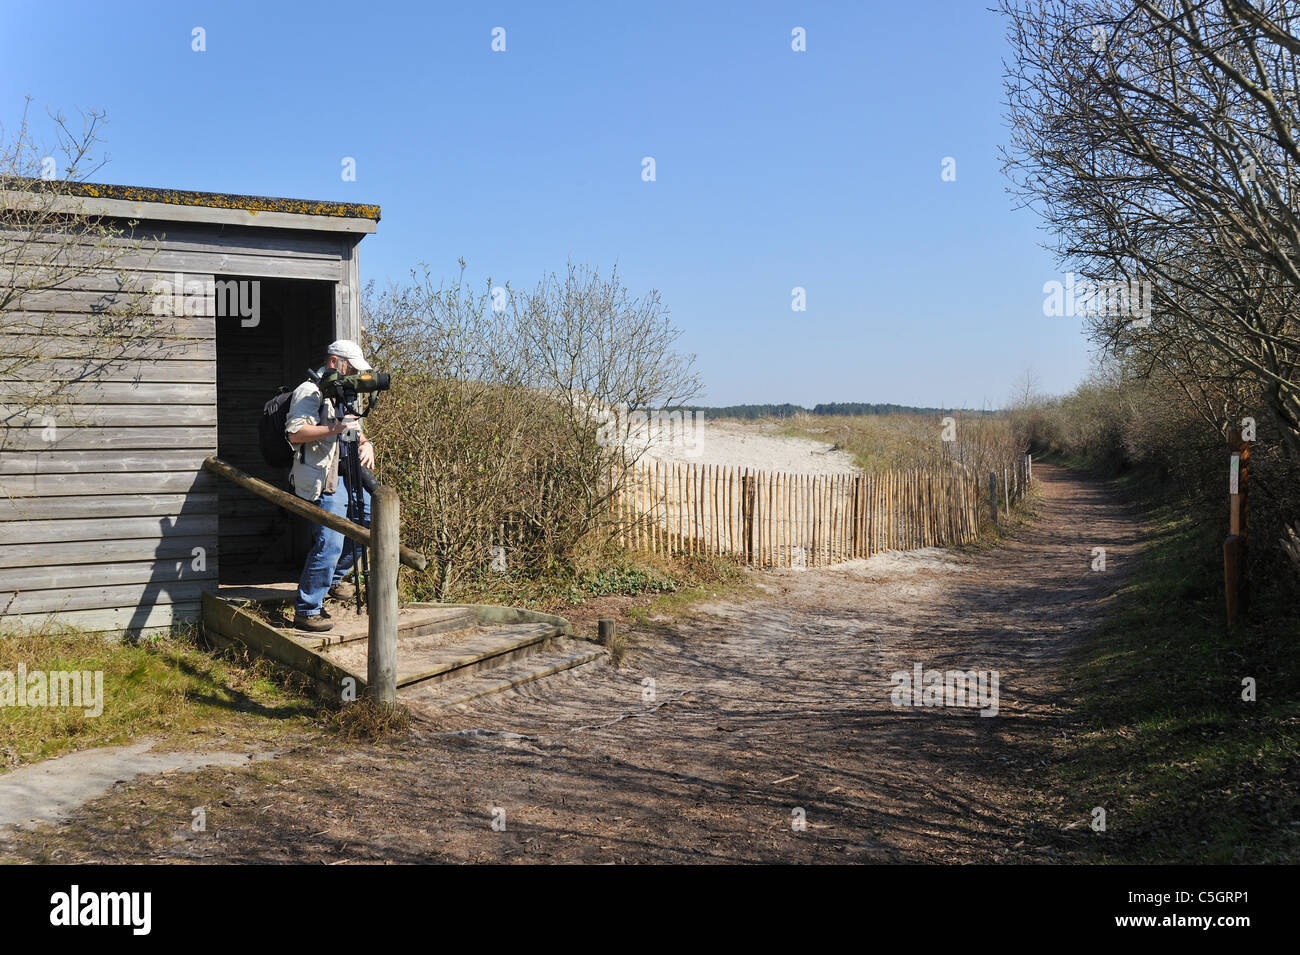 Avec l'Observateur d'oiseau laissant télescope se cacher dans la réserve naturelle du Parc du Marquenterre dans la baie de Somme, Picardie, France Banque D'Images